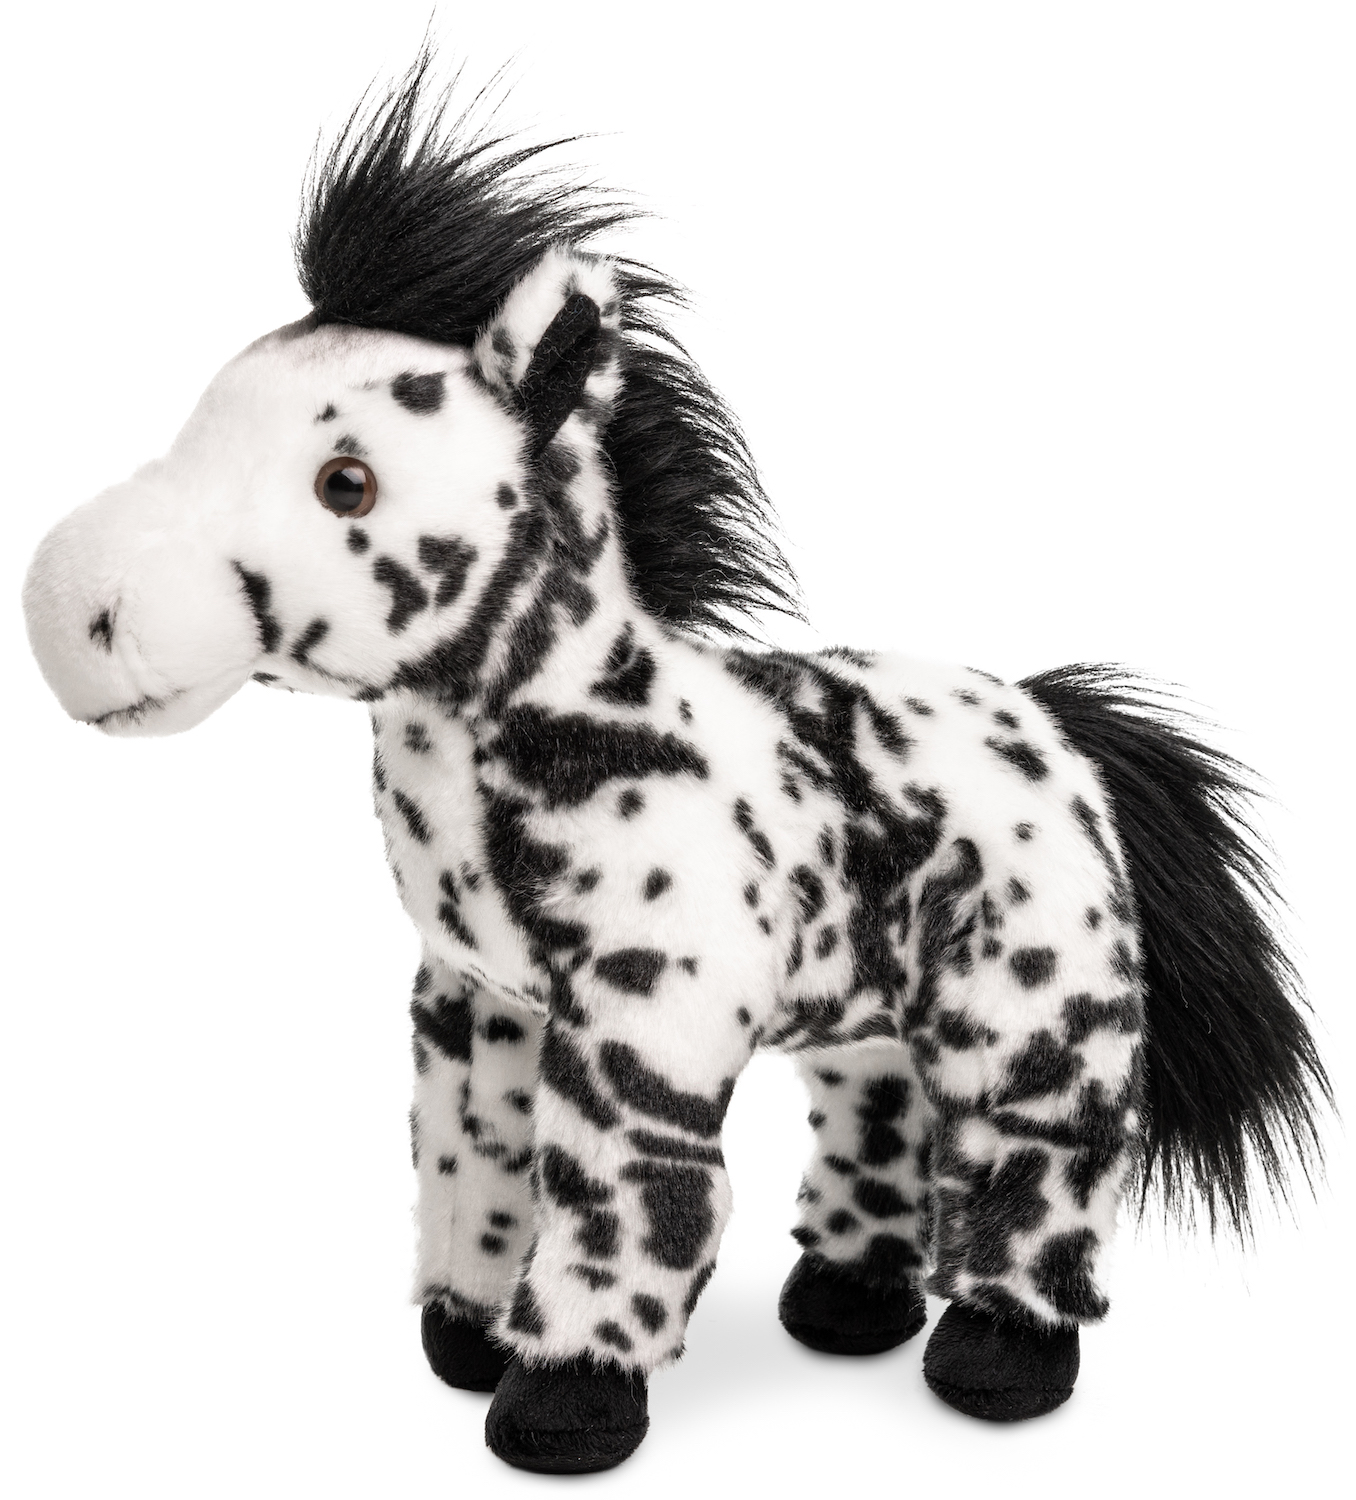 Pferd weiß mit schwarzen Flecken, stehend - 28 cm (Höhe) - Plüschtier, Kuscheltier